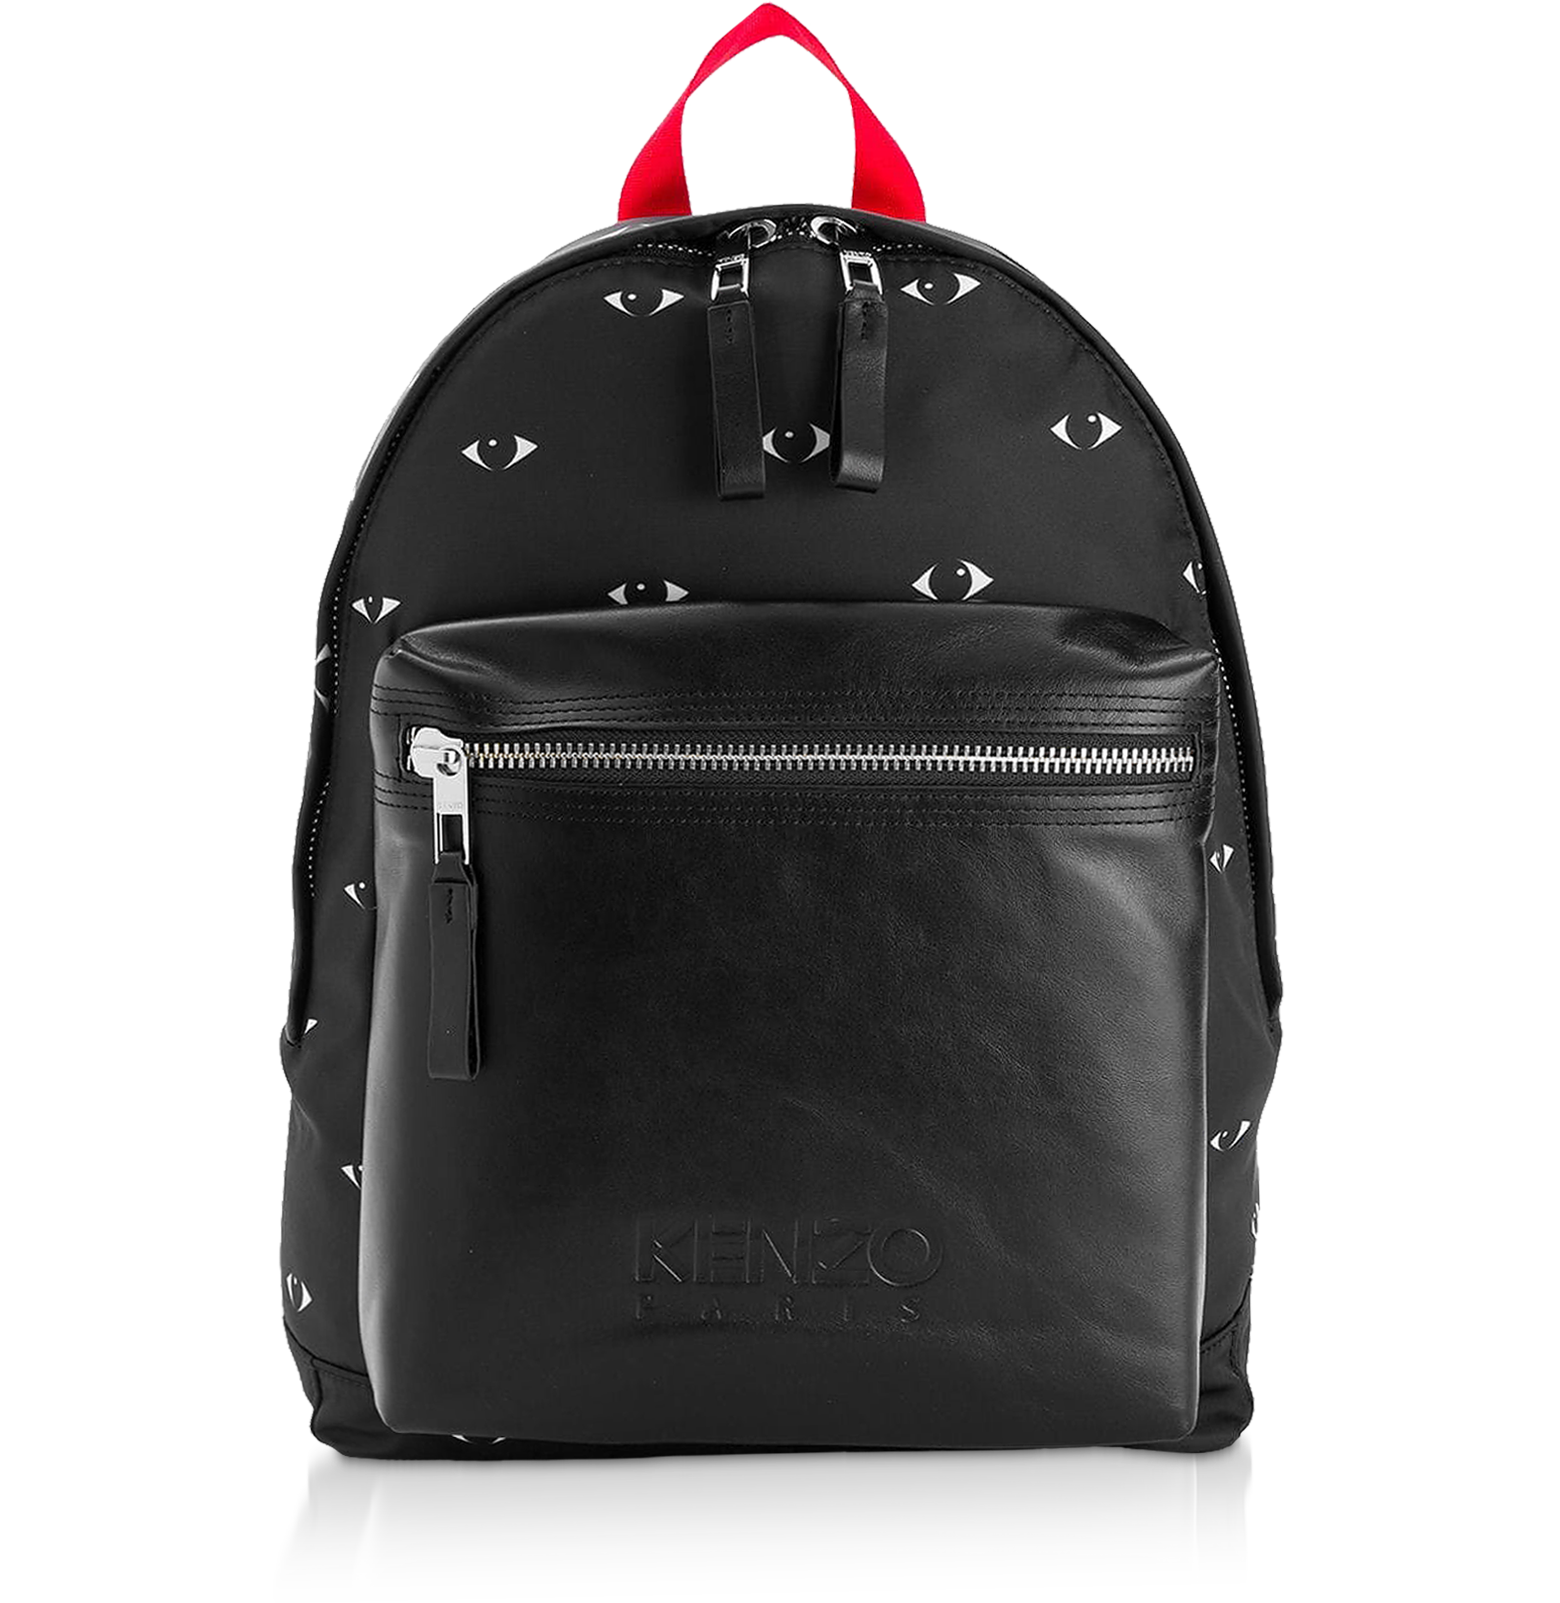 Kenzo Kenzo Eye Black Backpack at FORZIERI